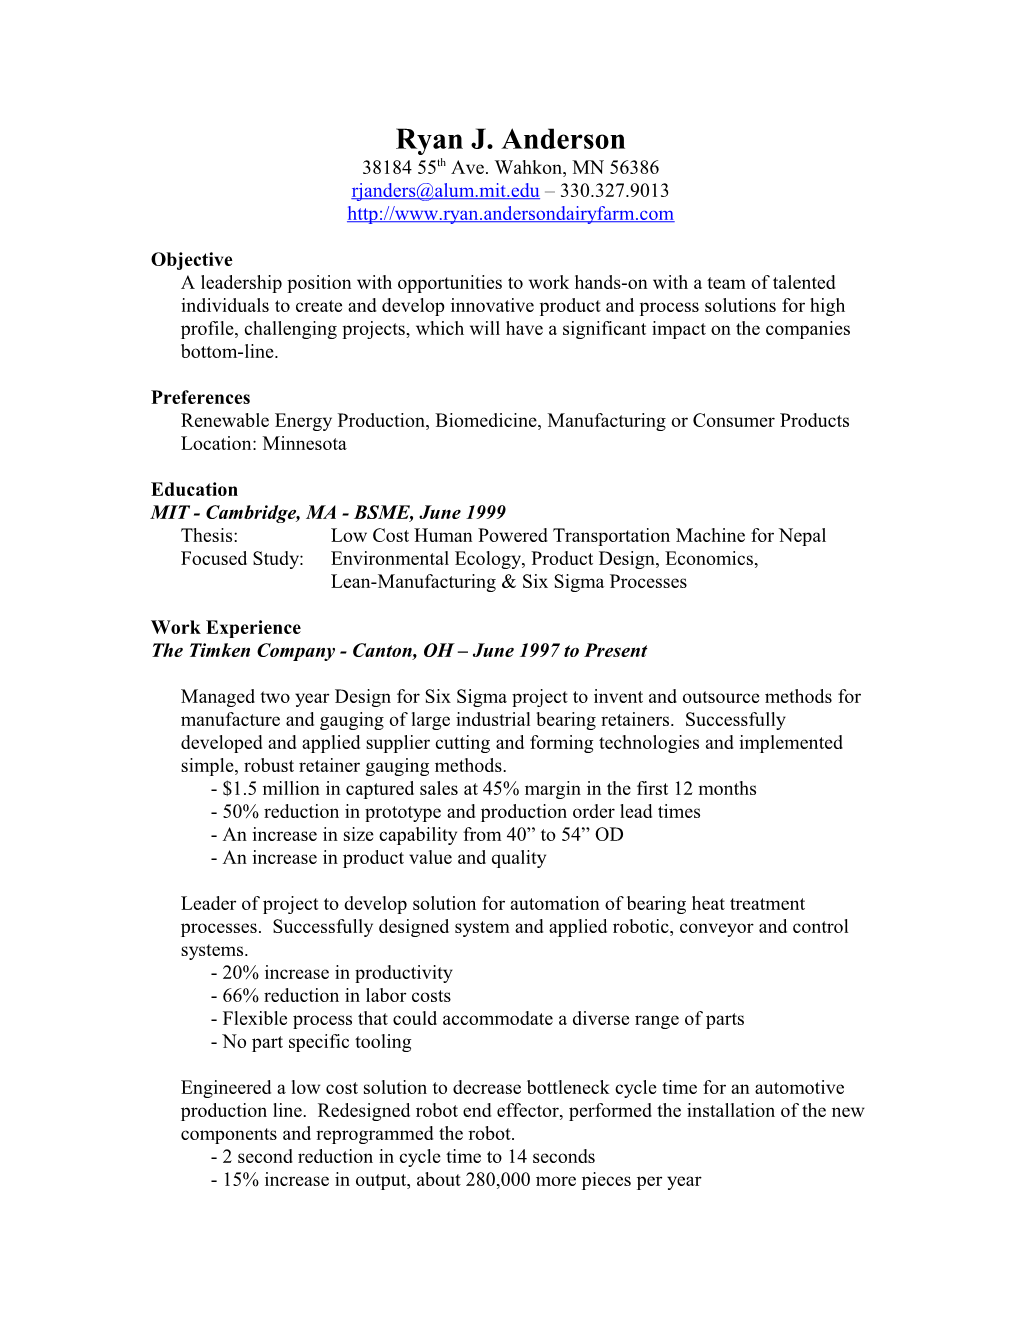 Ryan's Resume - Updated 2003/01/31